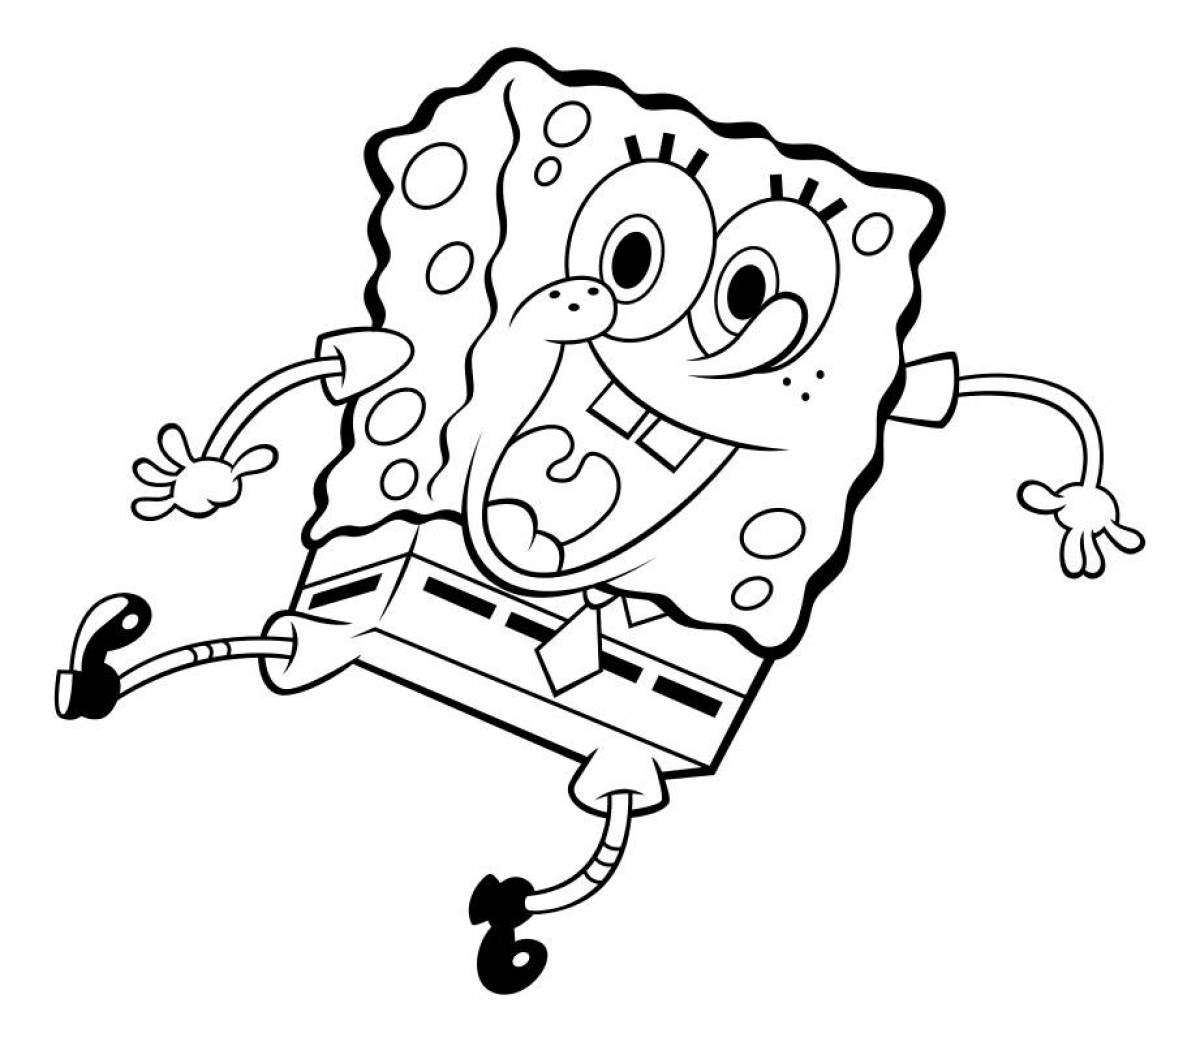 Sponge bob square pants #2